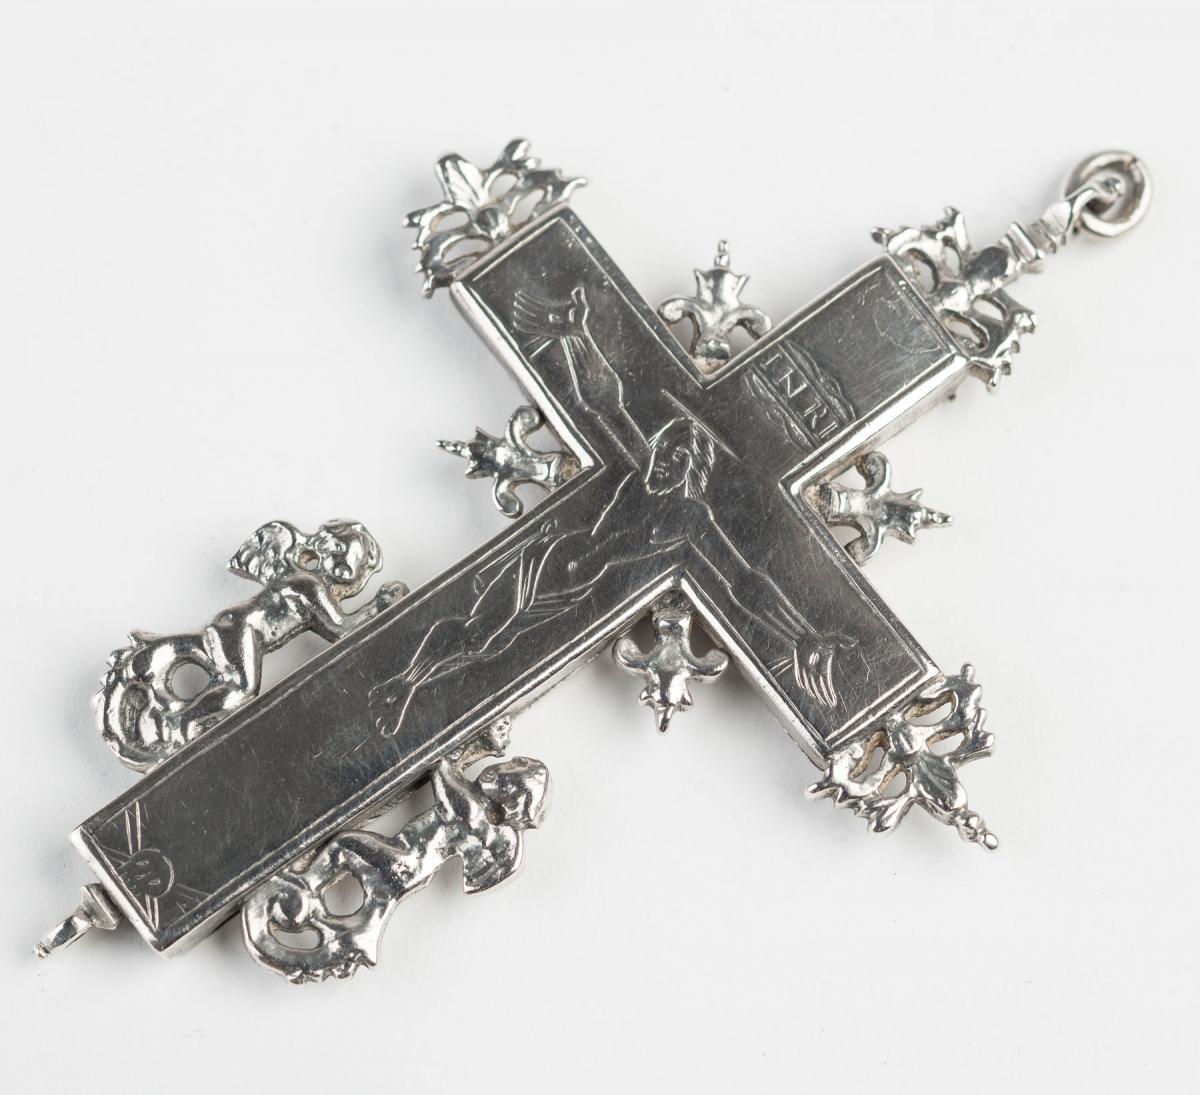 Cast silver reliquary crucifix